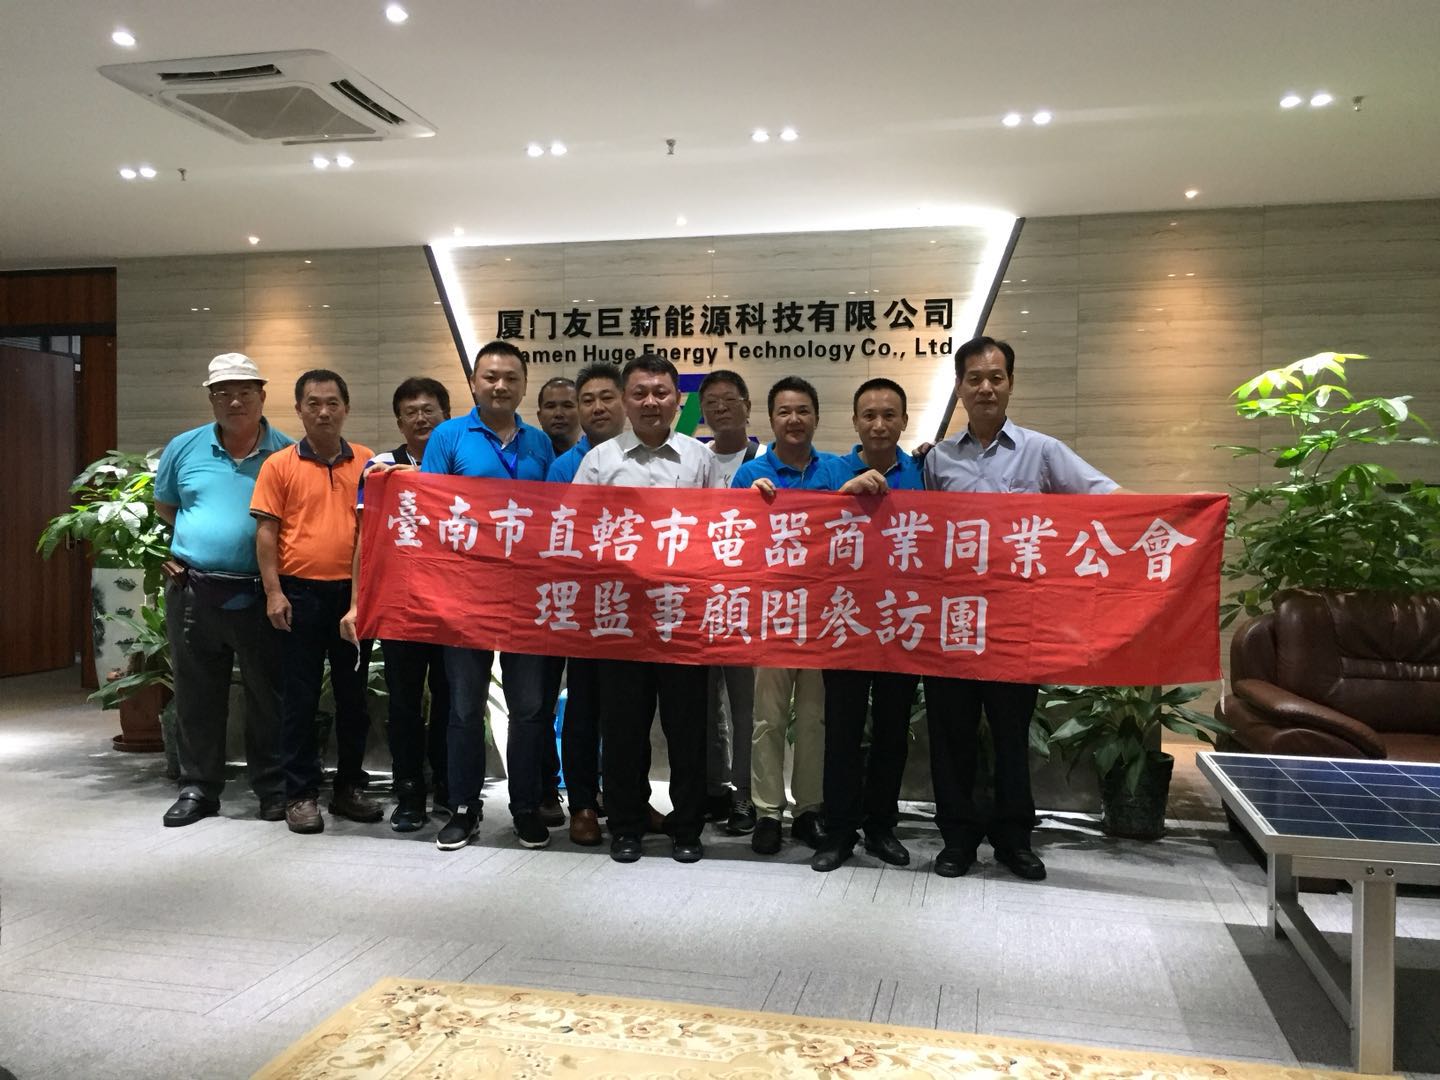 taiwan tainan electric appliances business association et taiwan green energy protection de l'environnement leaders du comité visite